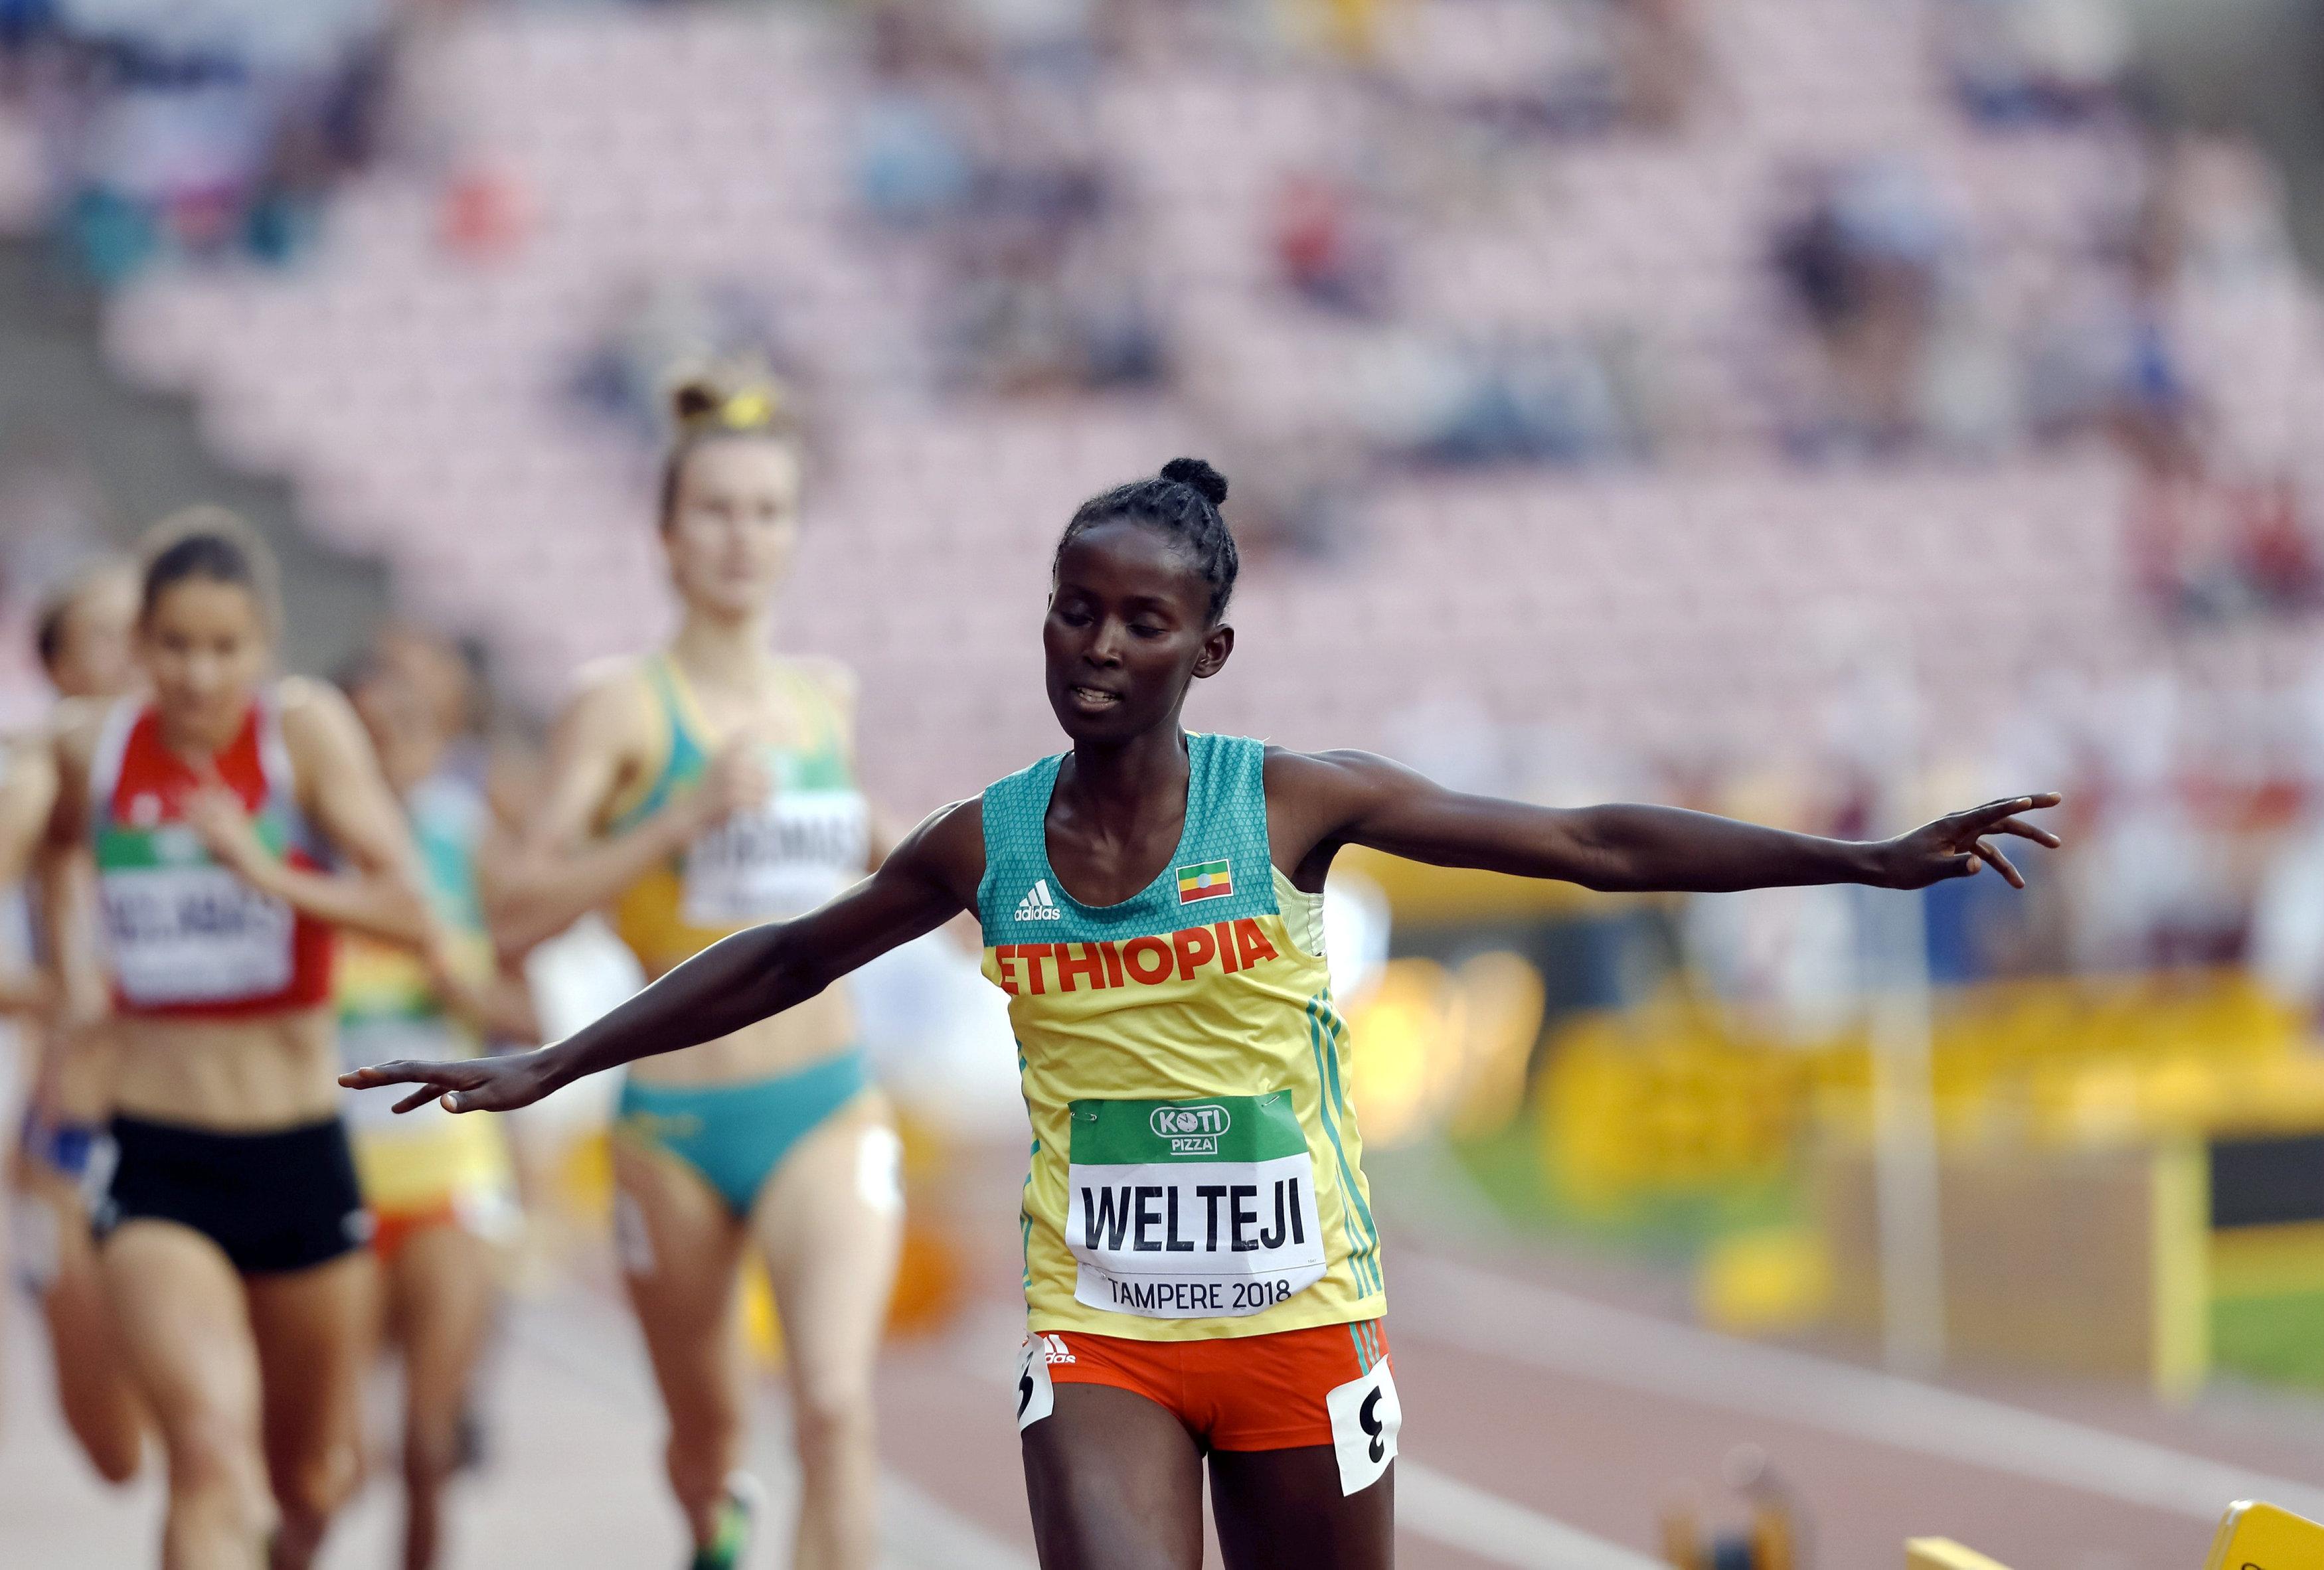  Dirige Welteji quase não termina os 3.000m em Meeting de atletismo na França